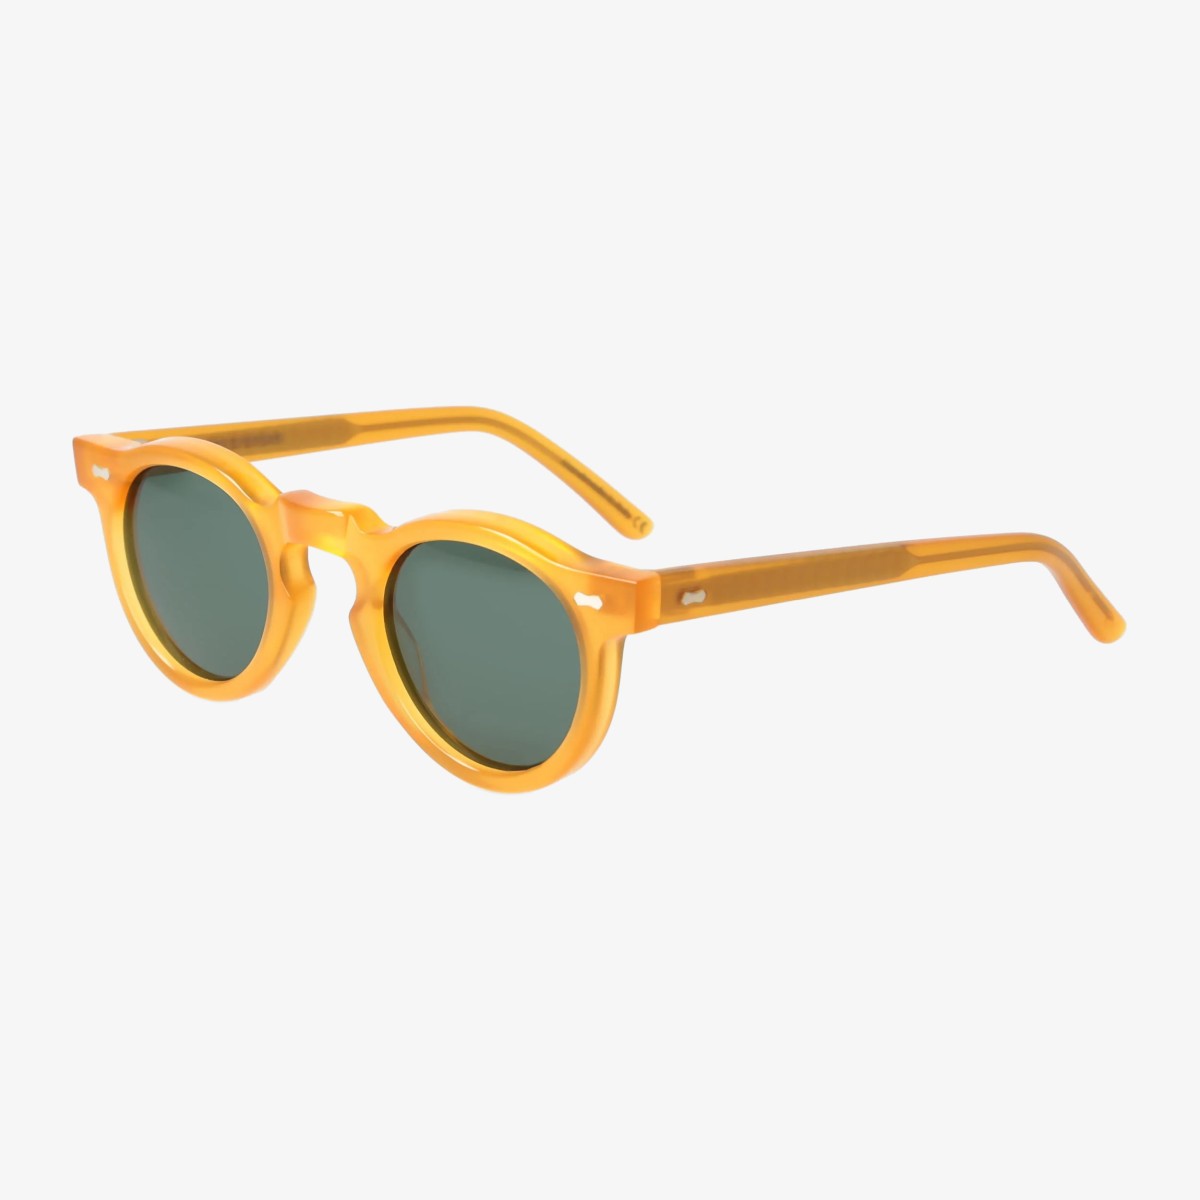 TBD Eyewear Welt saulės akiniai geltonais rėmeliais ir žaliais lęšiais